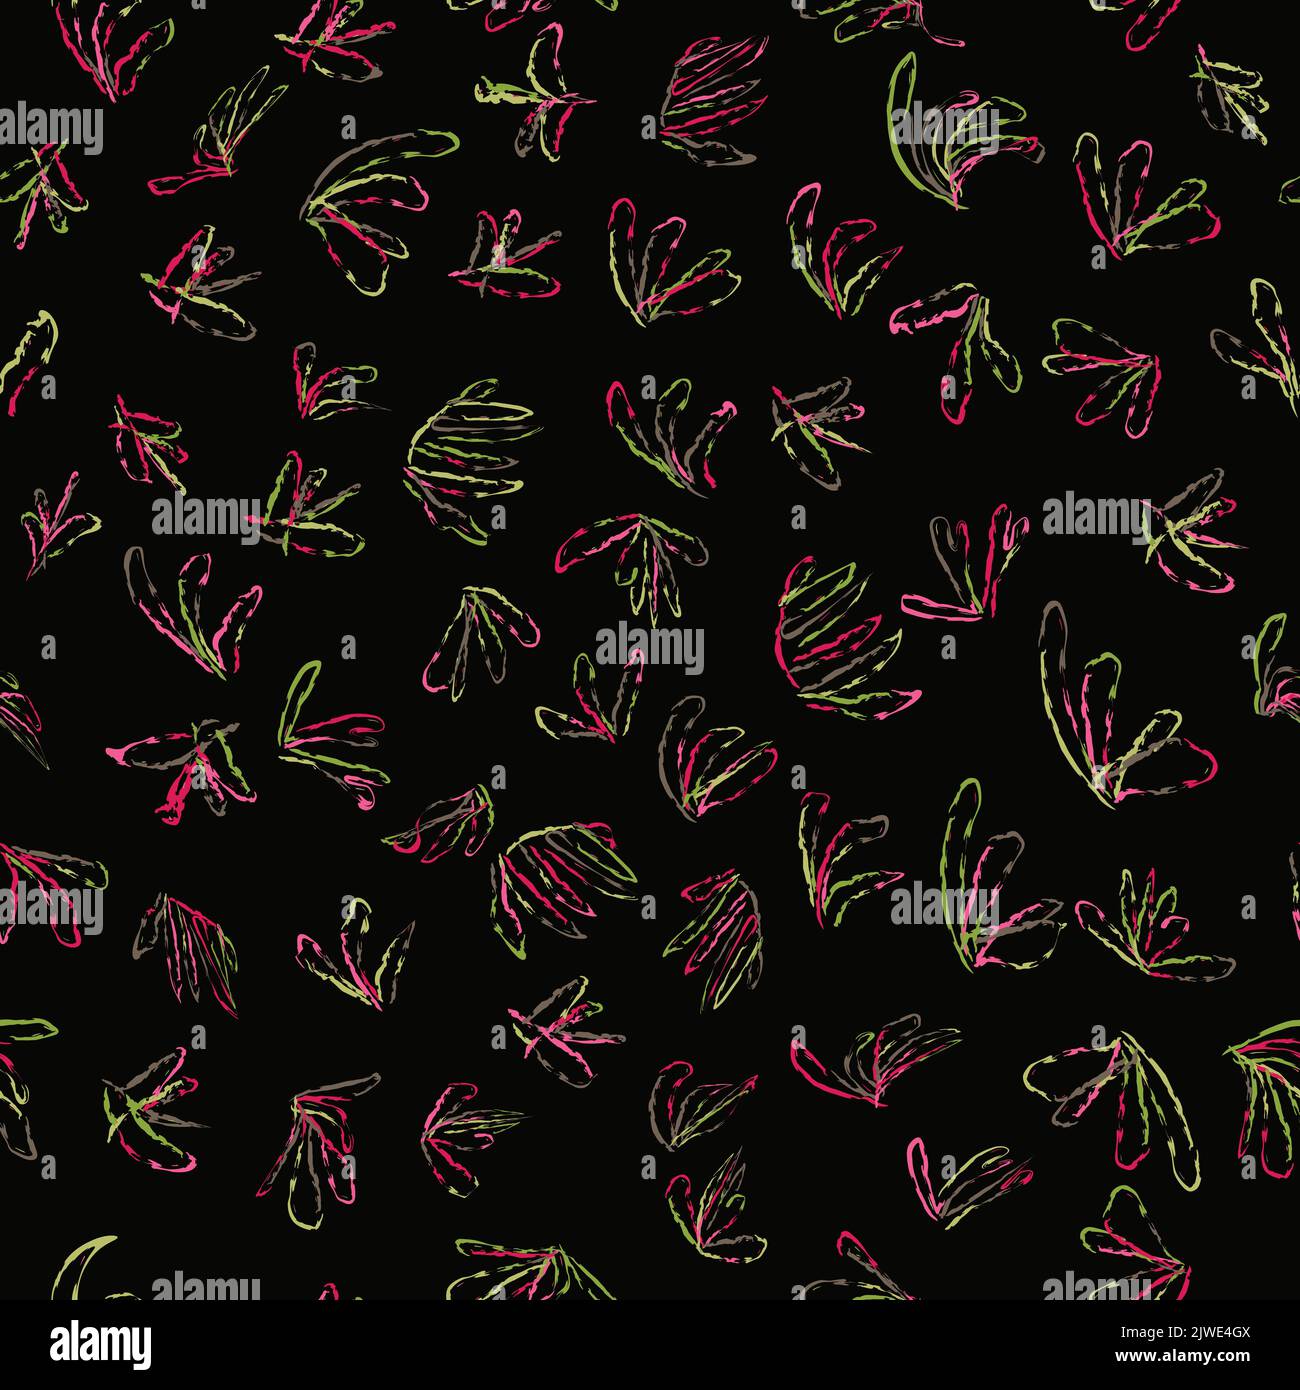 känguru Pfote Pflanze nahtlose Muster. Australische einheimische Flora Vektor Stock Illustration. Perfekt für Textilien, Tapeten, Stoffe und Kleidung. Stock Vektor